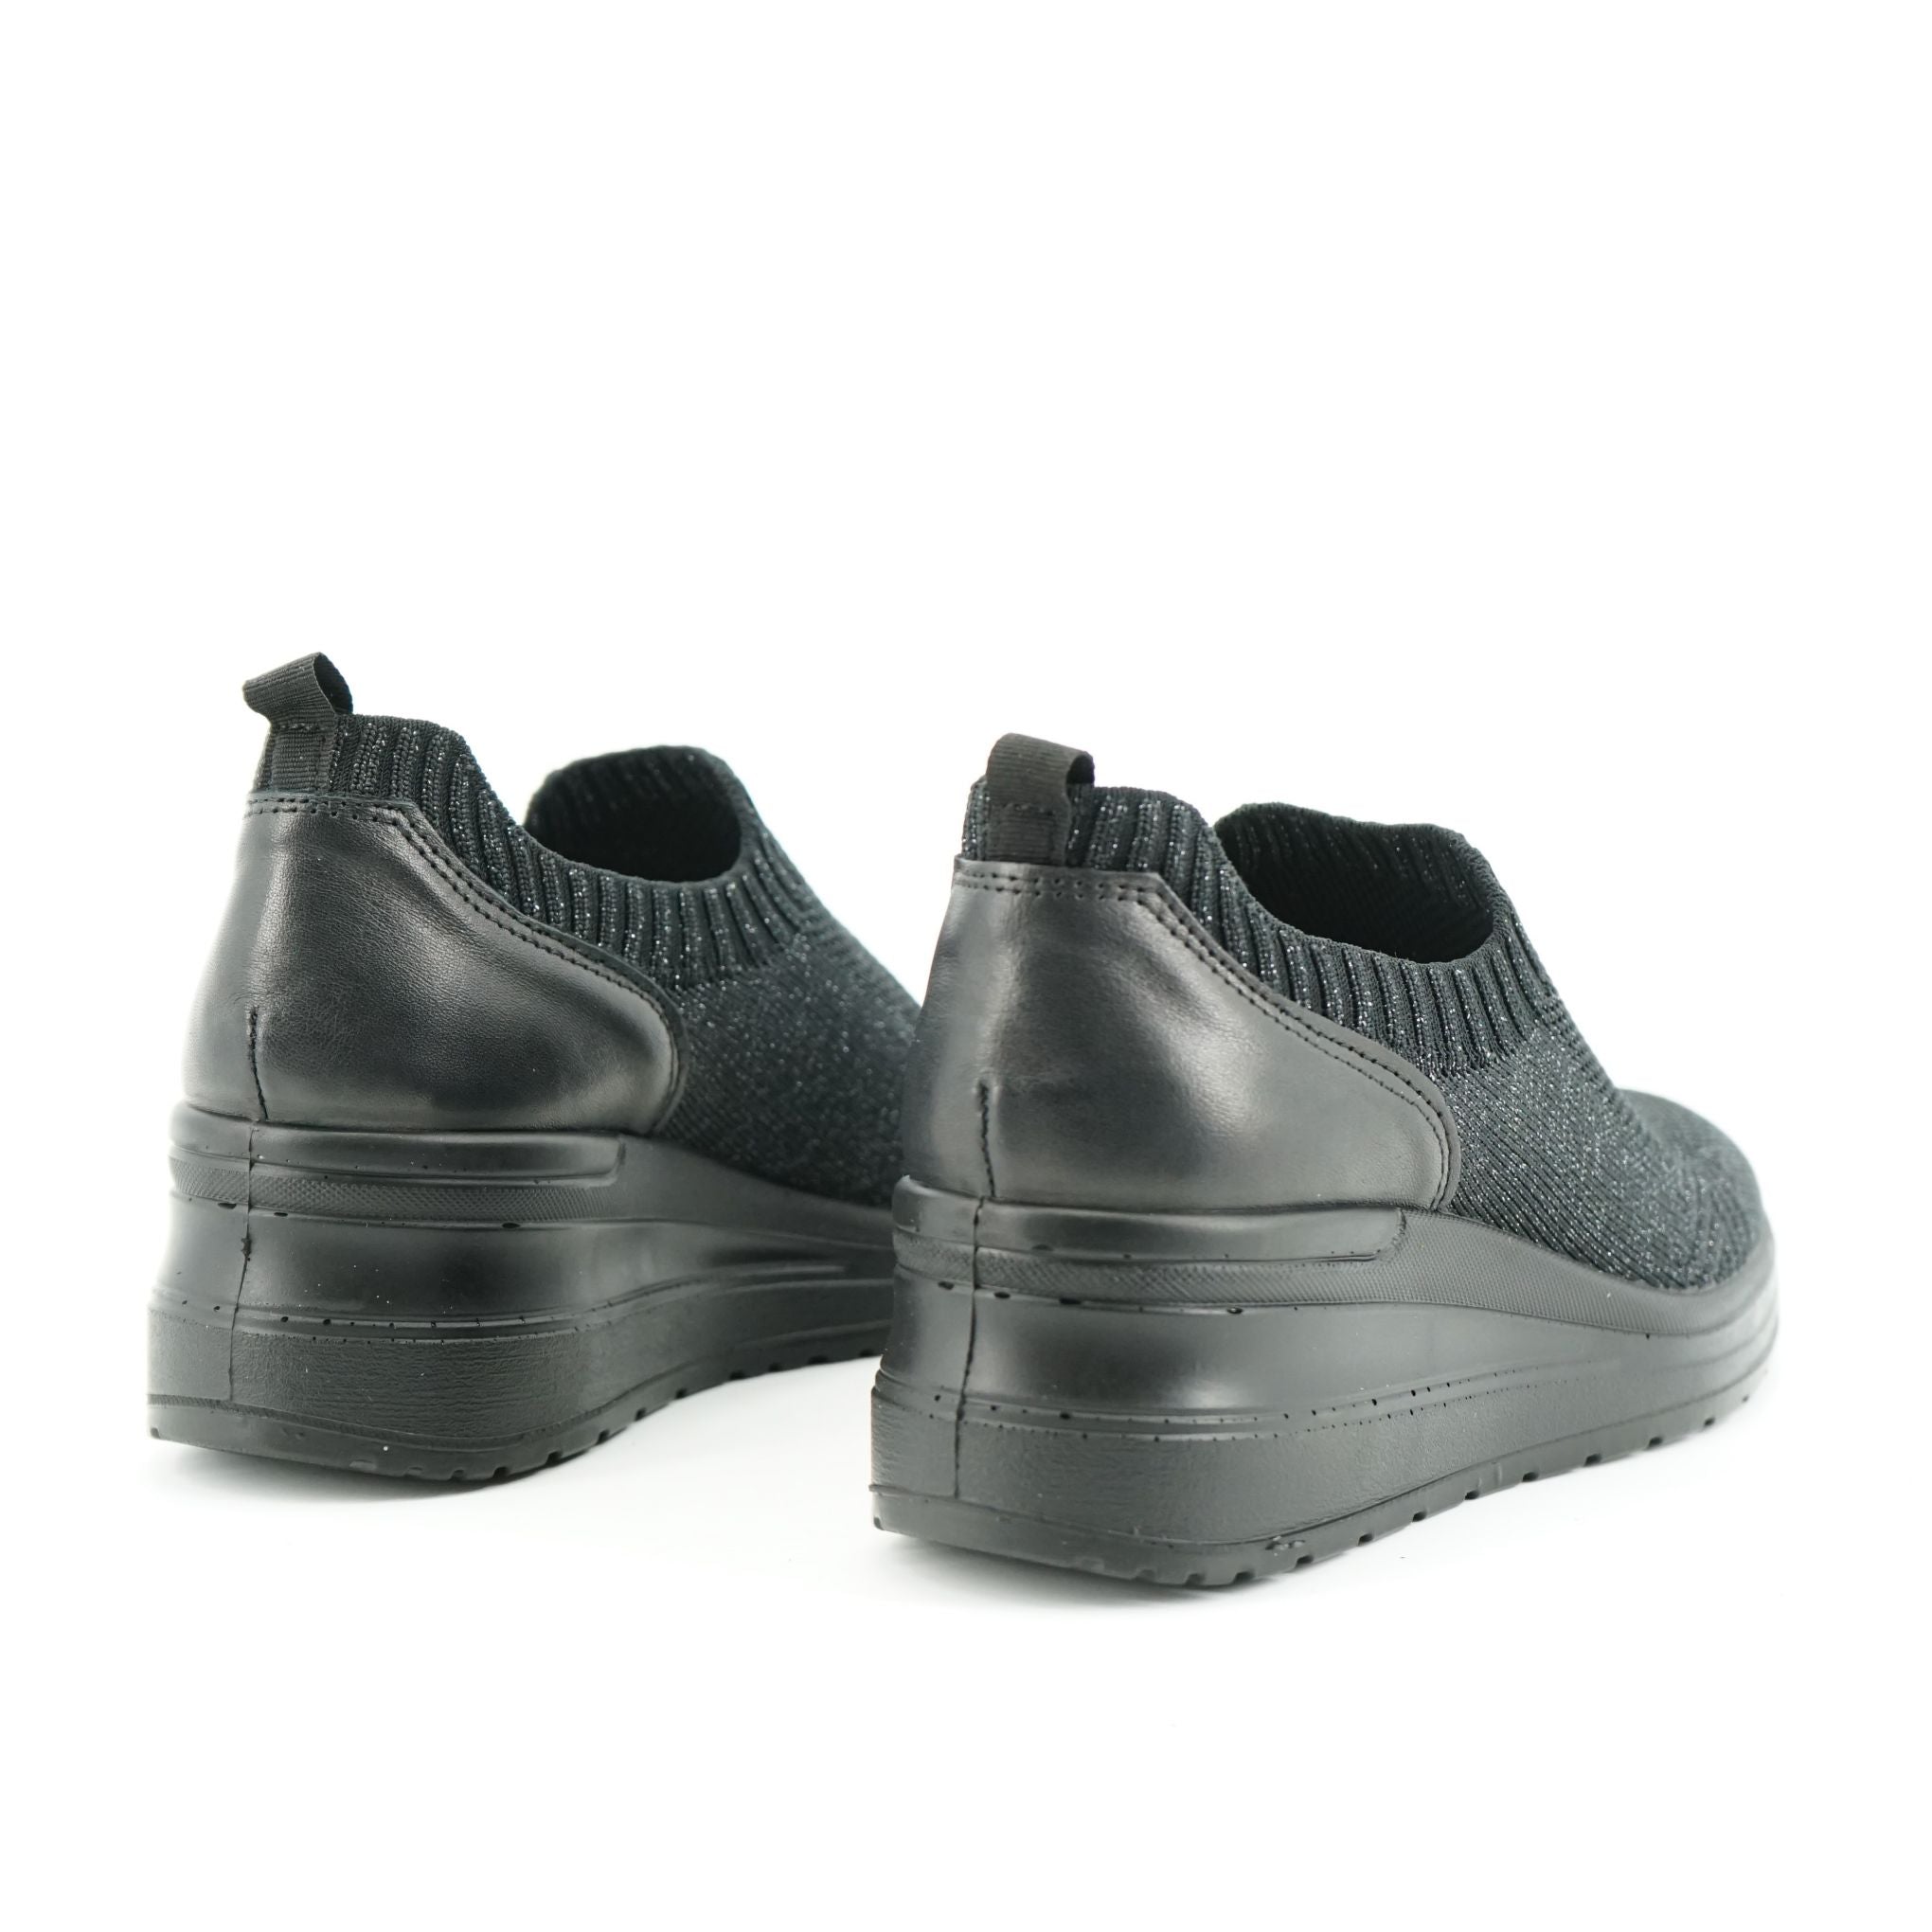 Sneakers slip on Enval Soft con zeppa in tessuto elastico: 3755000